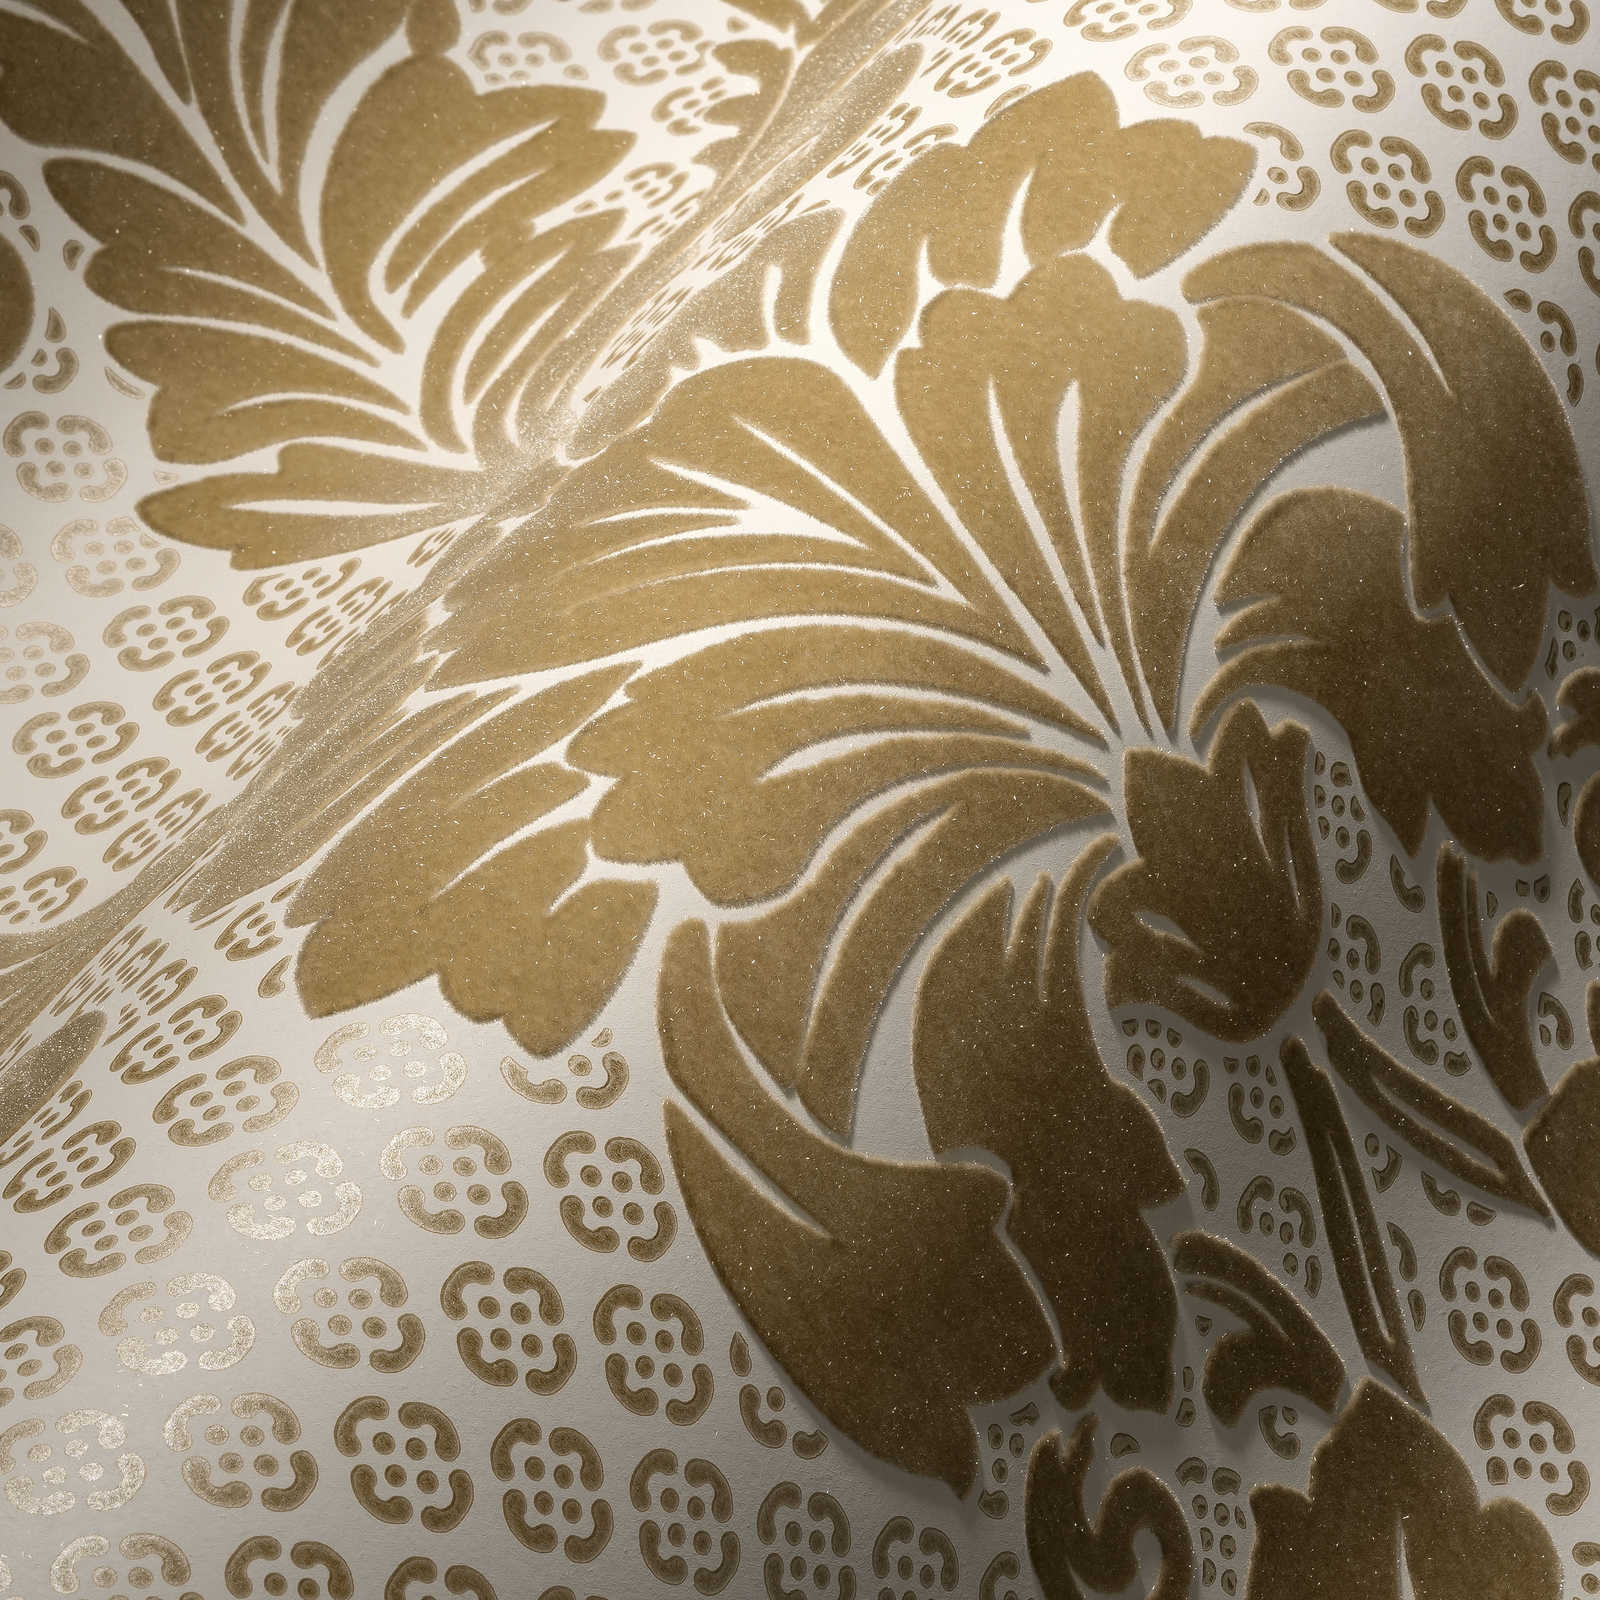             Papier peint à motifs ornementaux avec grand motif floral - or, crème
        